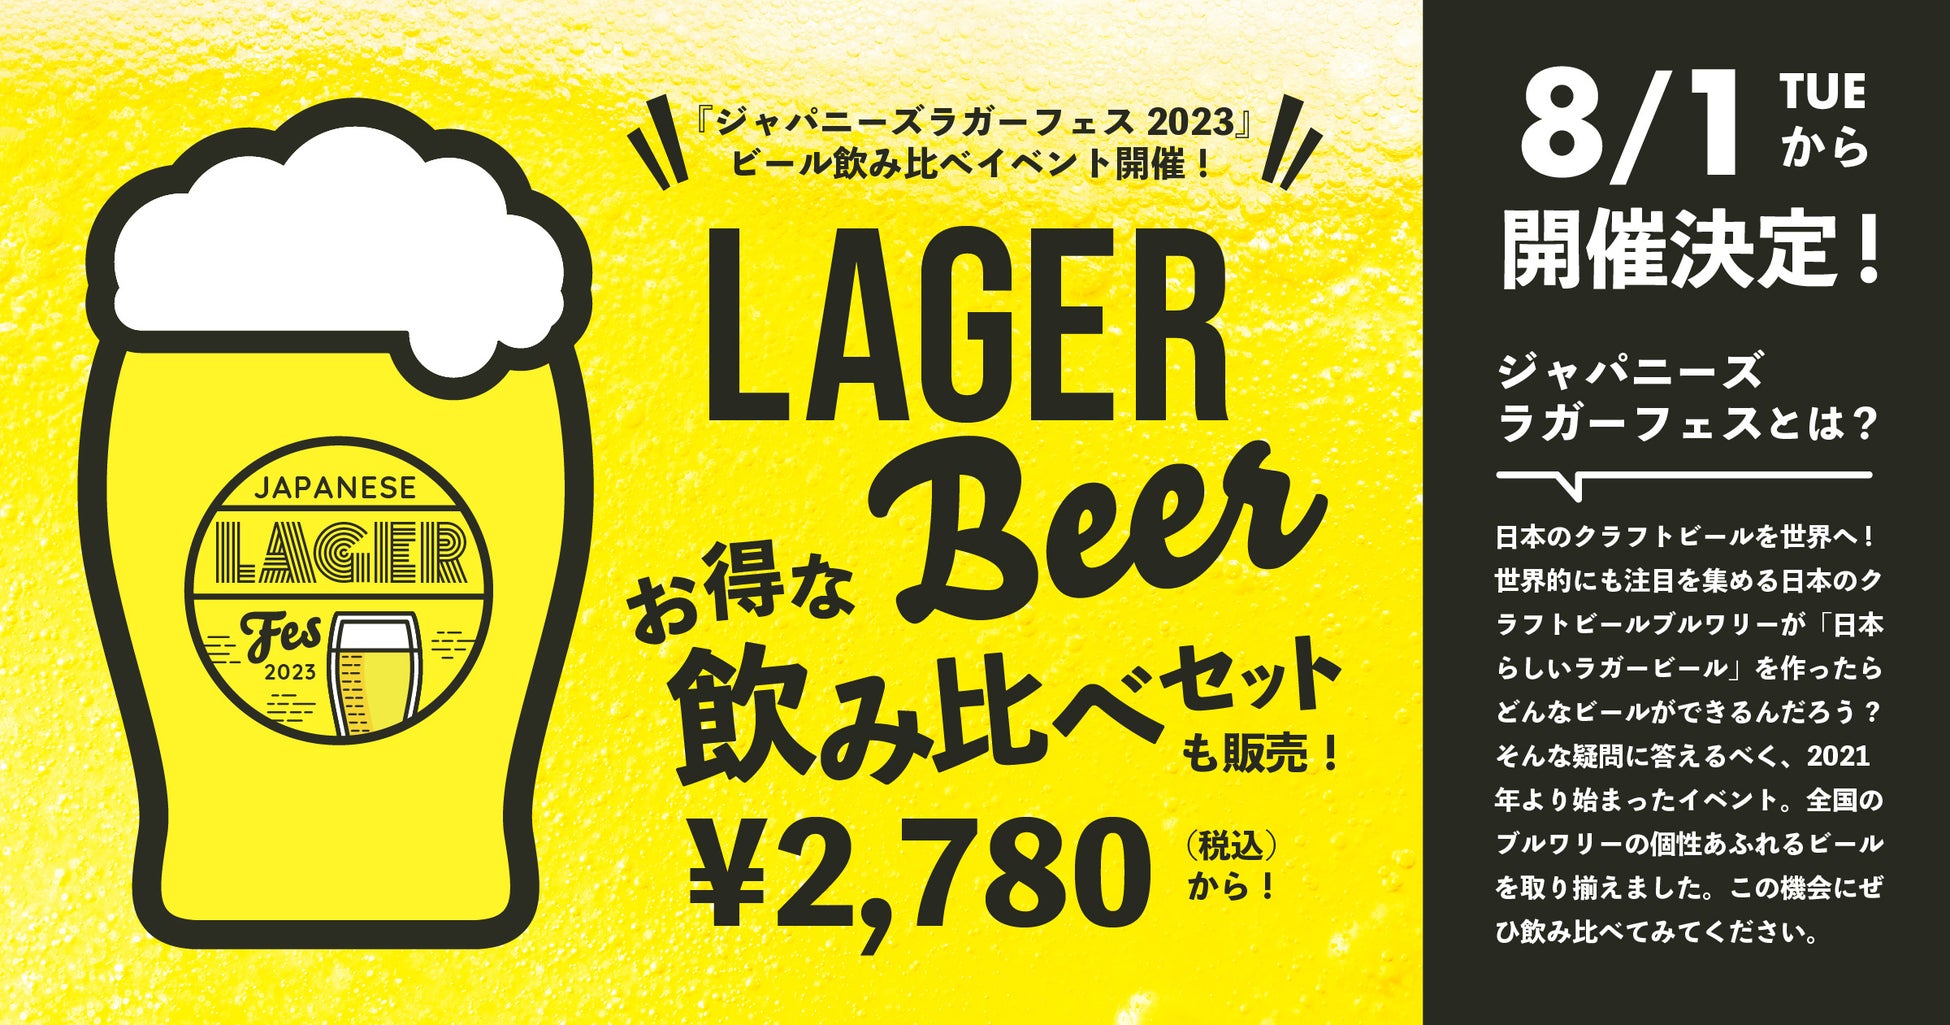 【8/1〜】東京、仙台、大分、鹿児島でクラフトビールの飲み比べイベント「ジャパニーズラガーフェス 2023」を開催